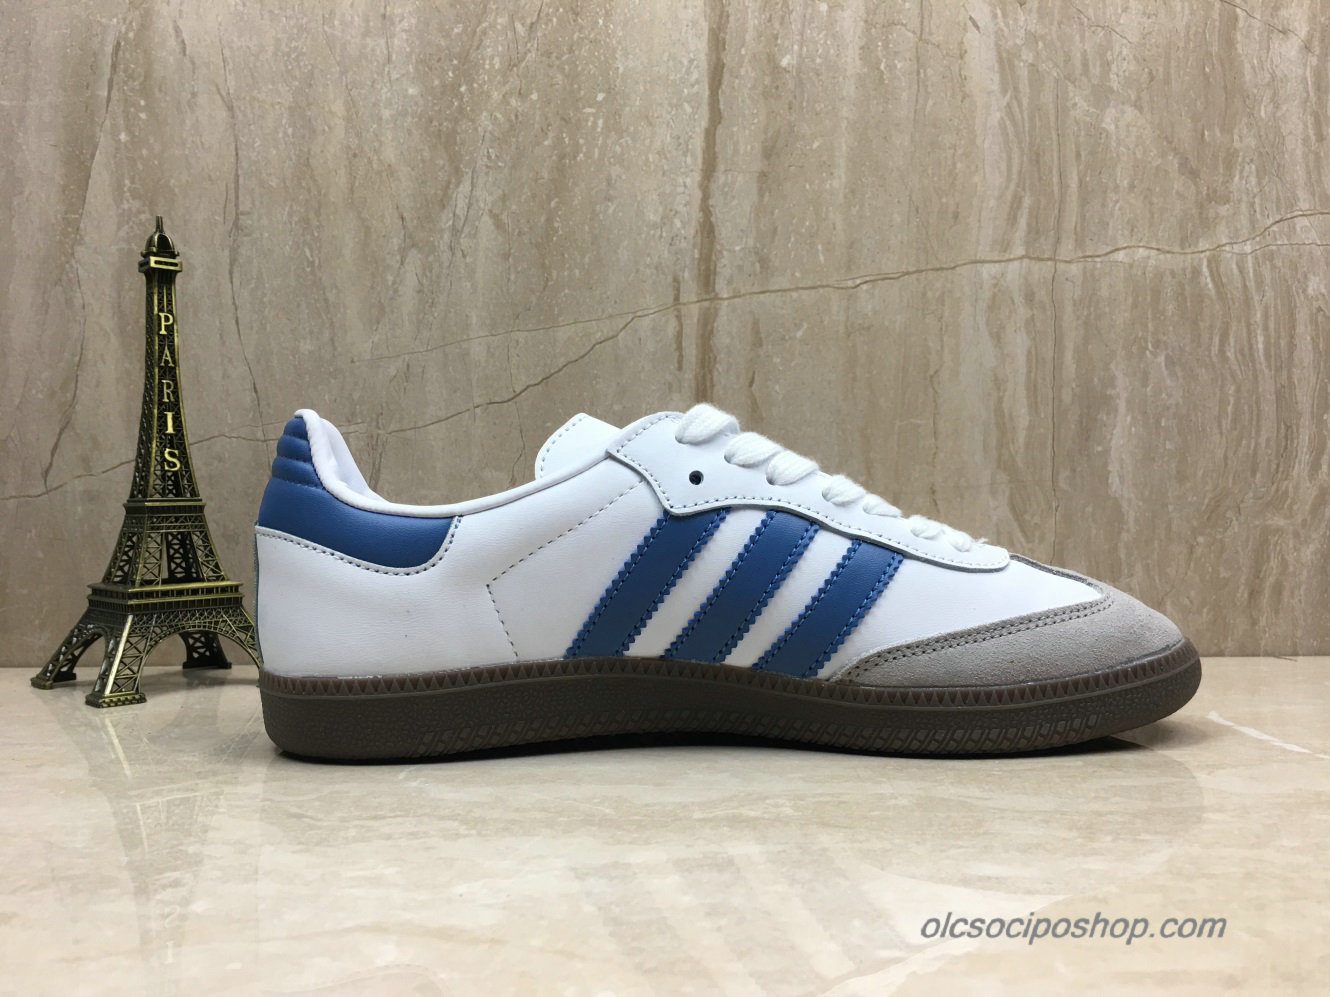 Adidas Samba OG Fehér/Kék/Szürke Cipők (B44629) - Kattintásra bezárul